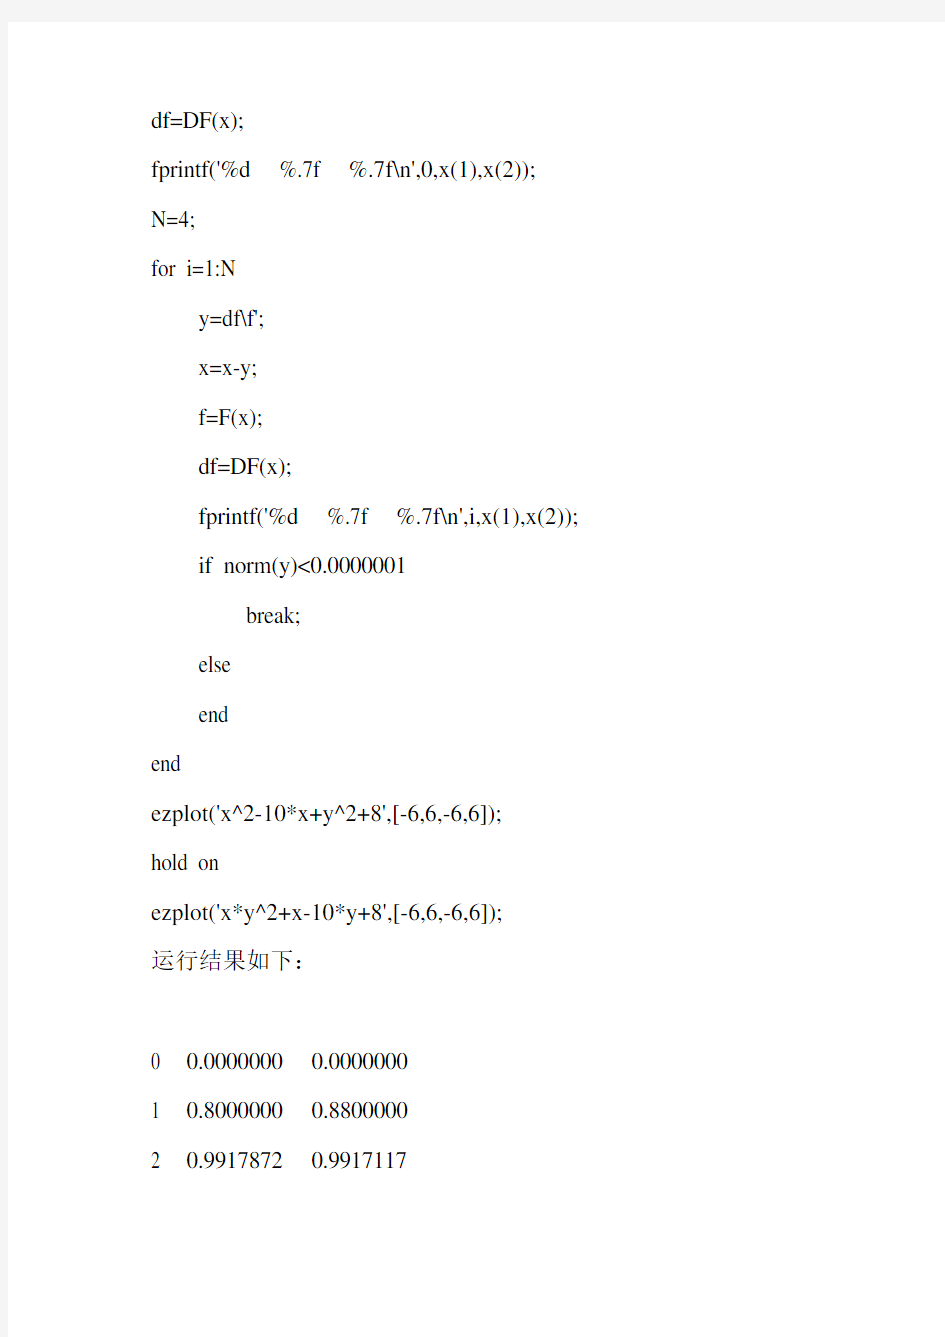 牛顿迭代法求解非线性方程组的代码